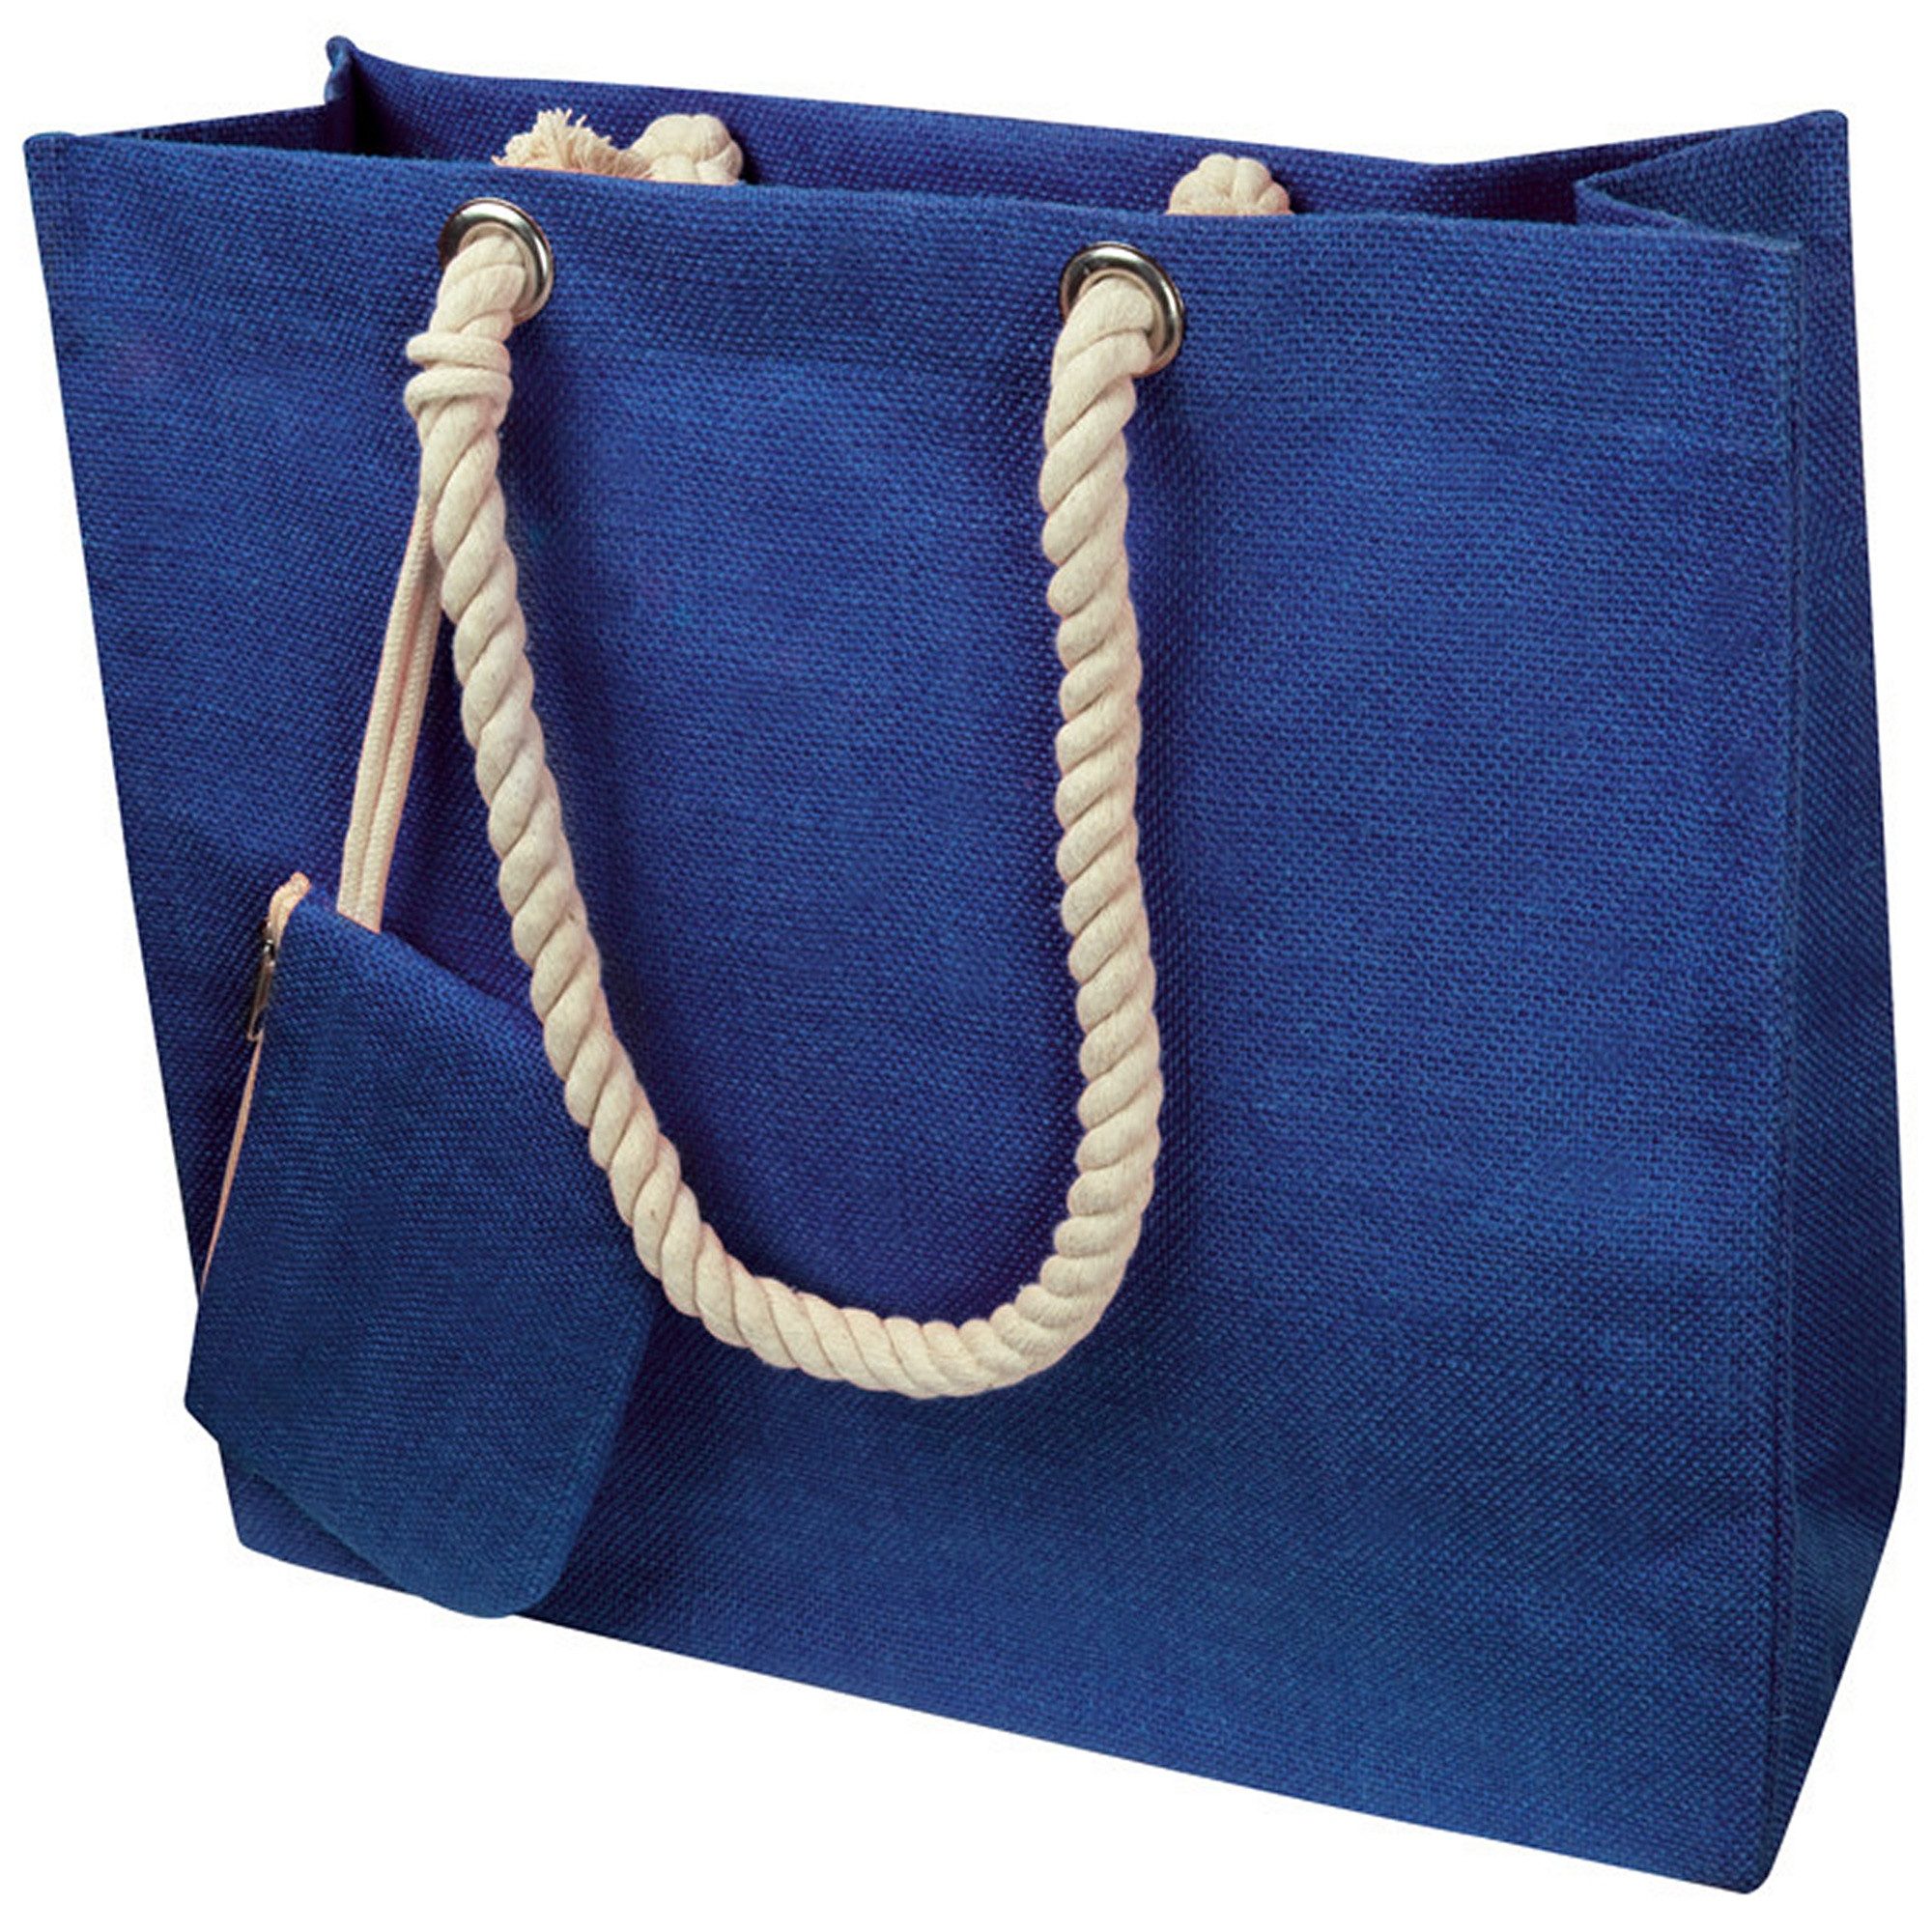 Livepac Office Freizeittasche Einkaufstasche / Jutetasche mit Kordel / Farbe: blau